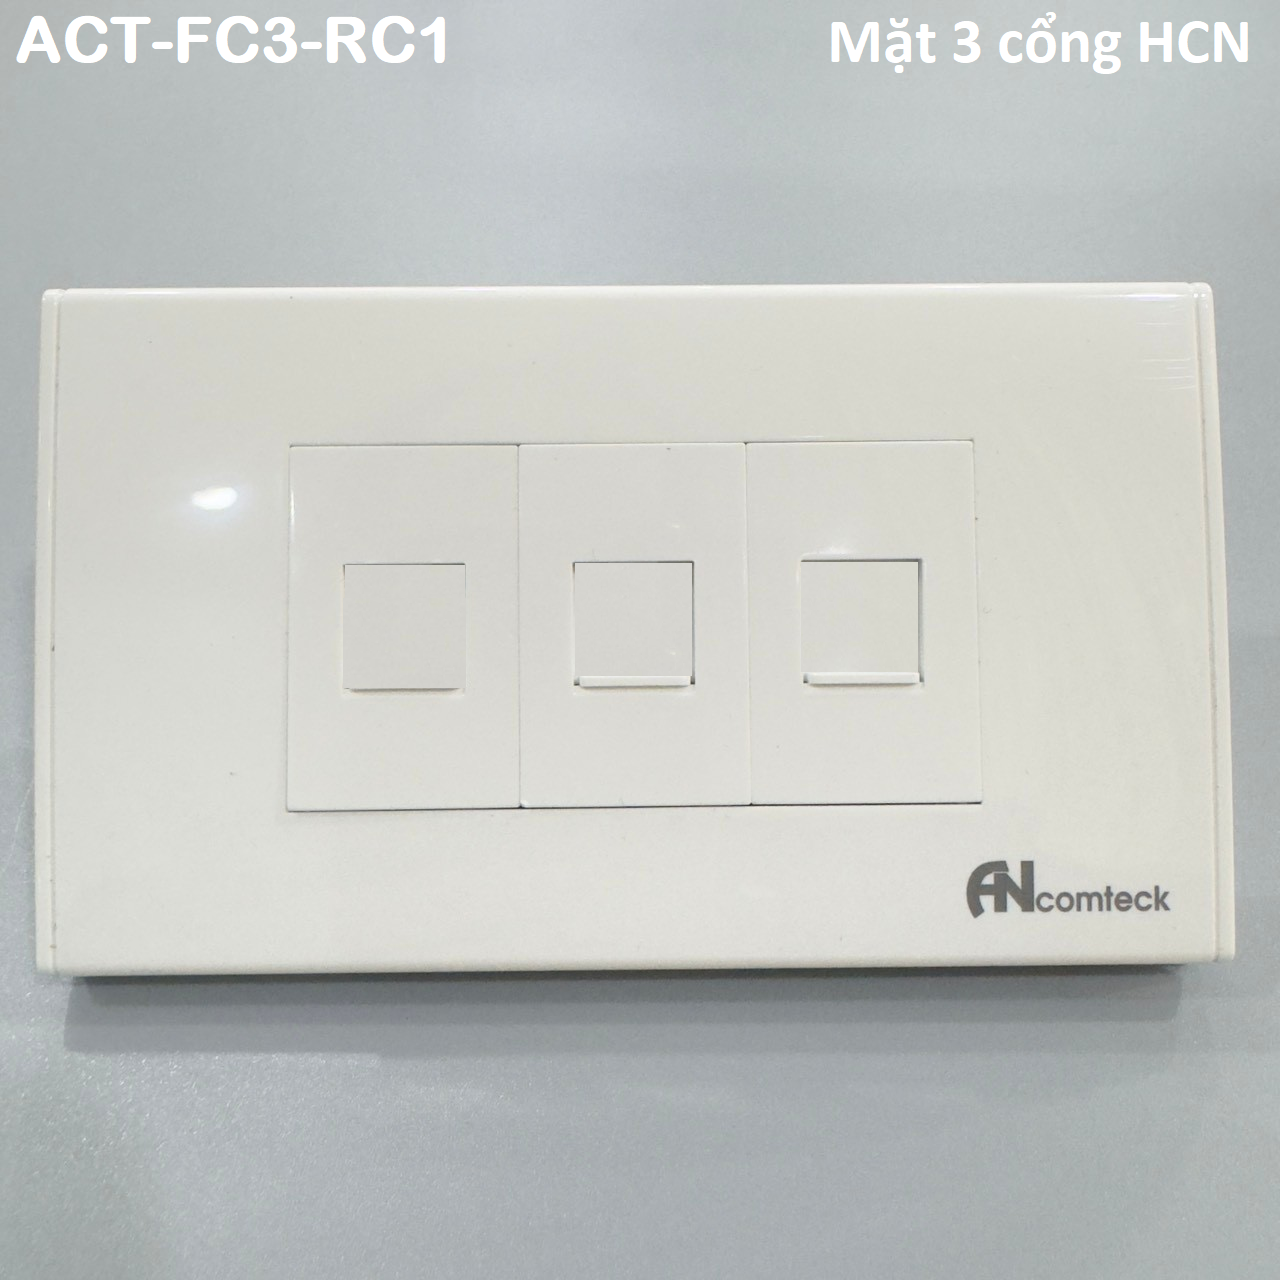 Mặt 3 cổng Ancomteck , mã ACT-FC3-RC1